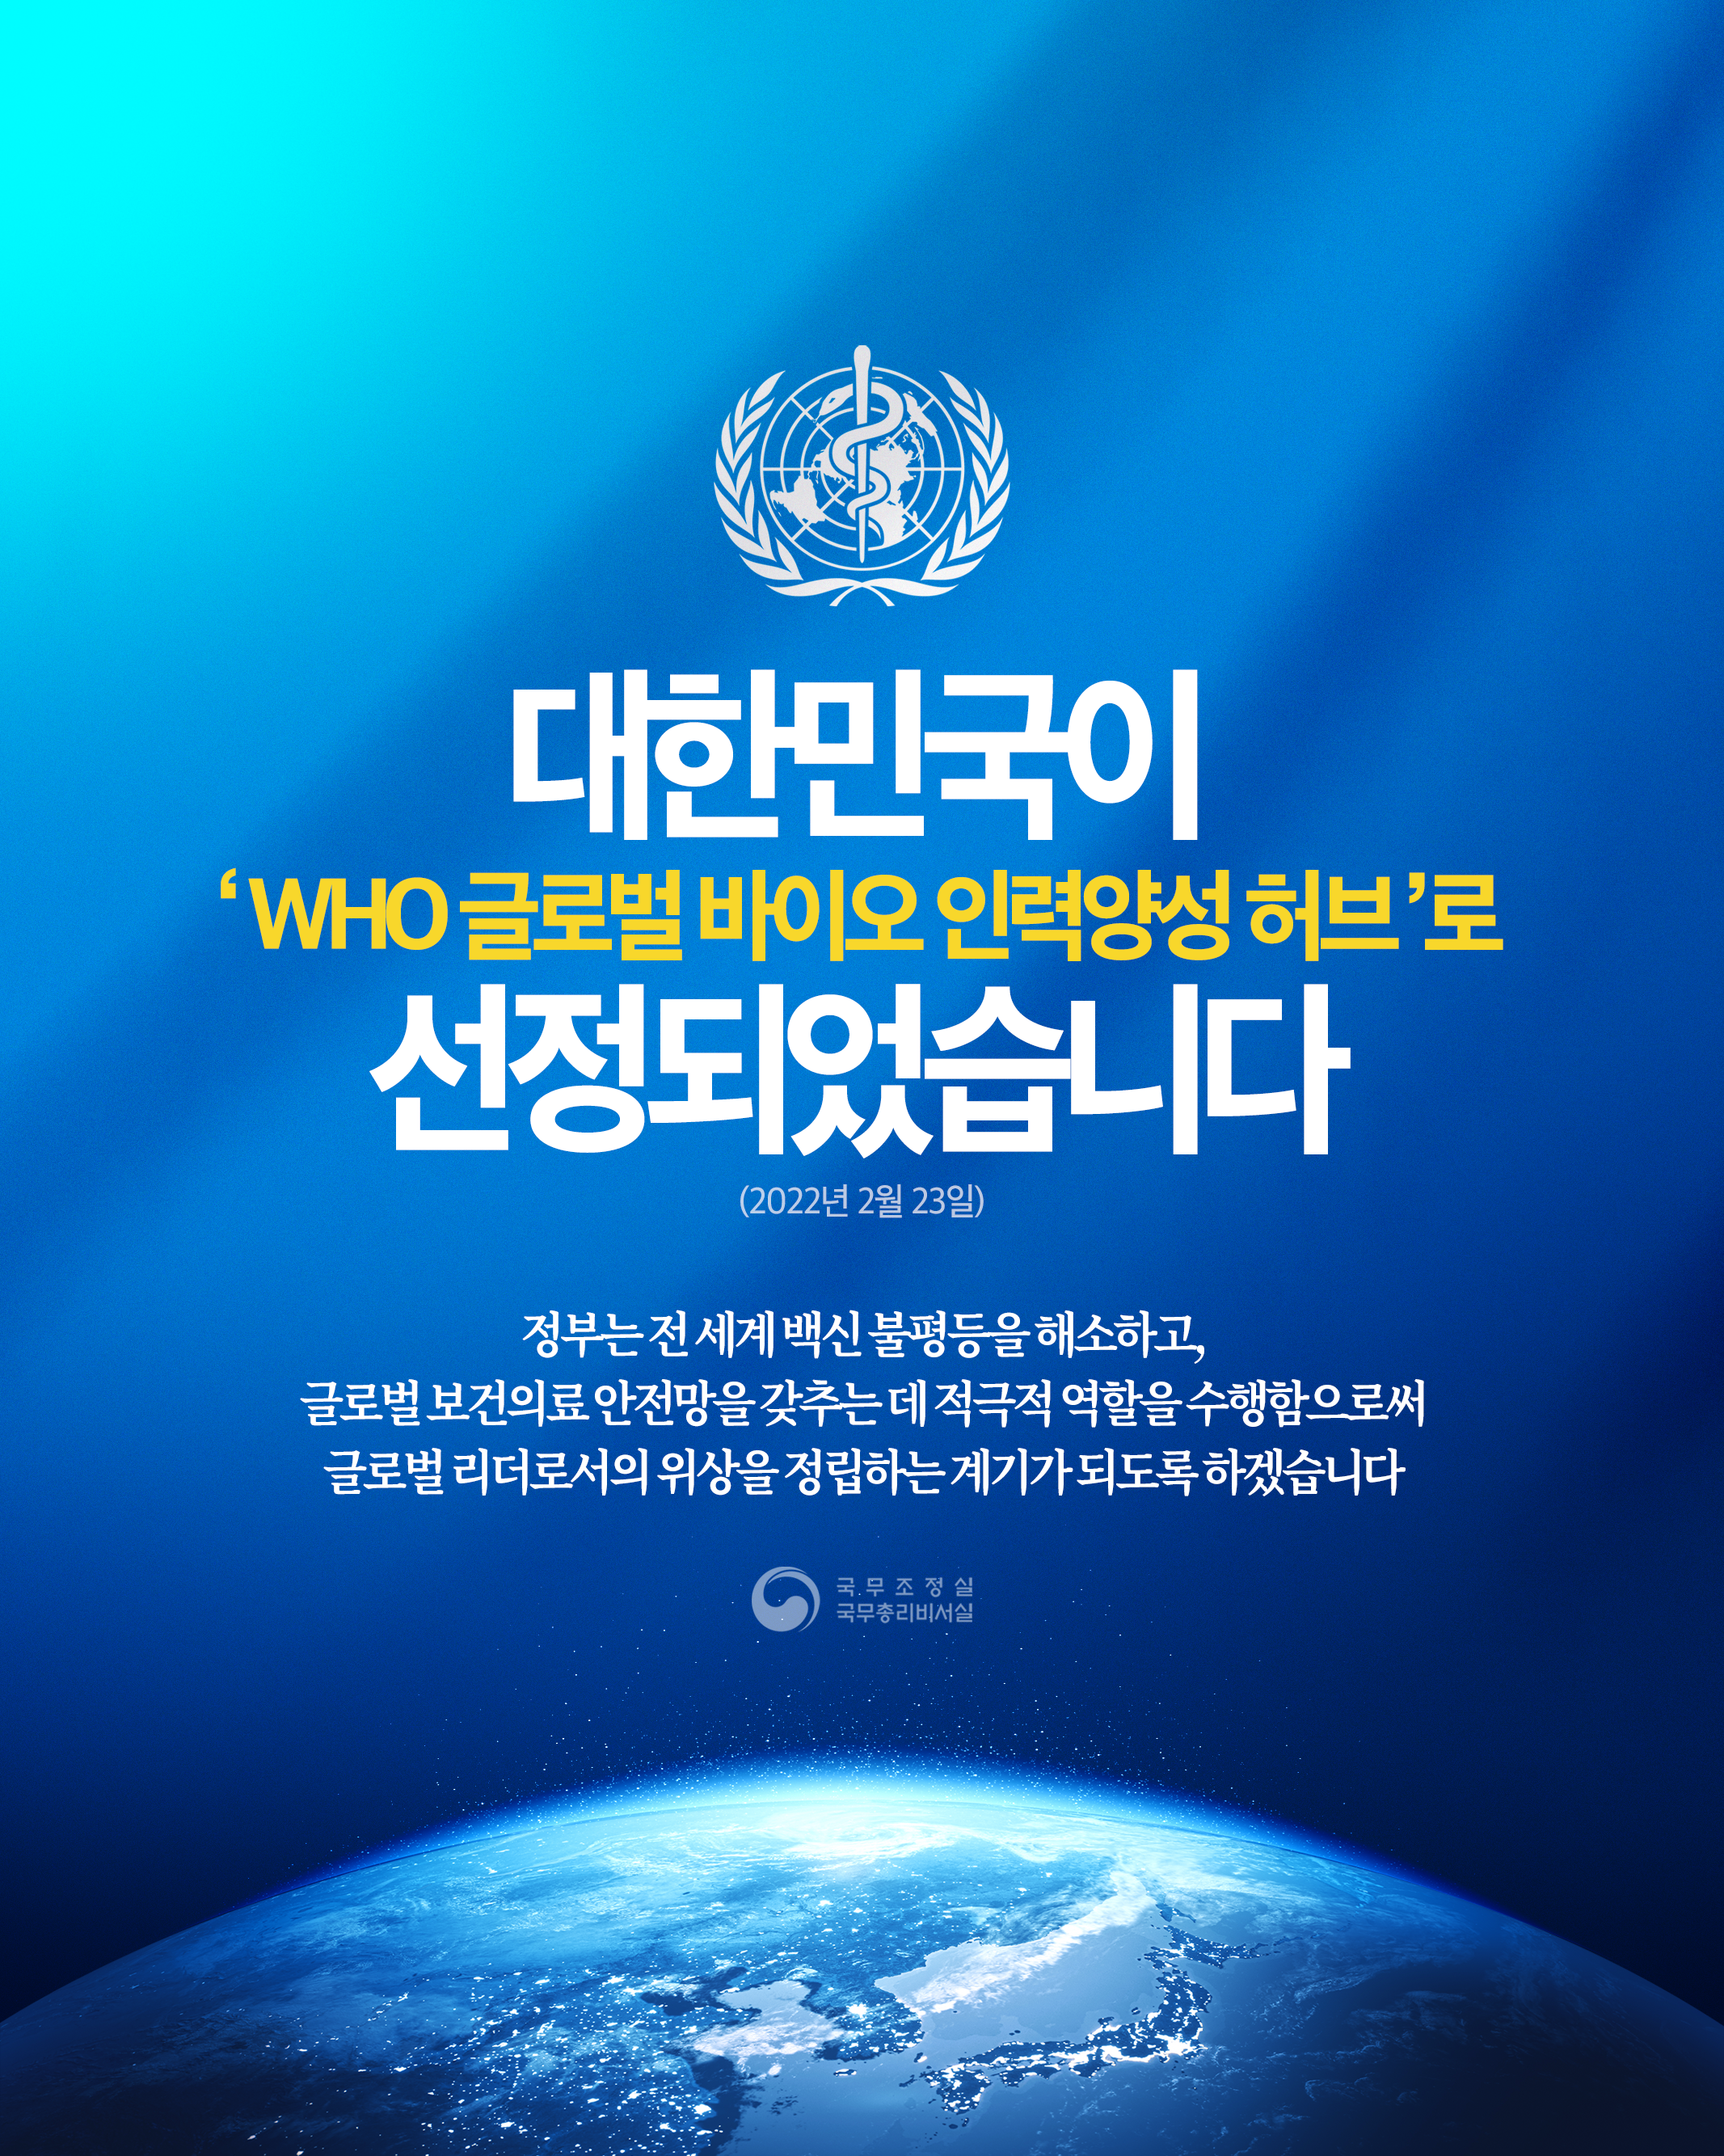 대한민국이 'WHO 글로벌 바이오 인력양성 허브'로 선정되었습니다